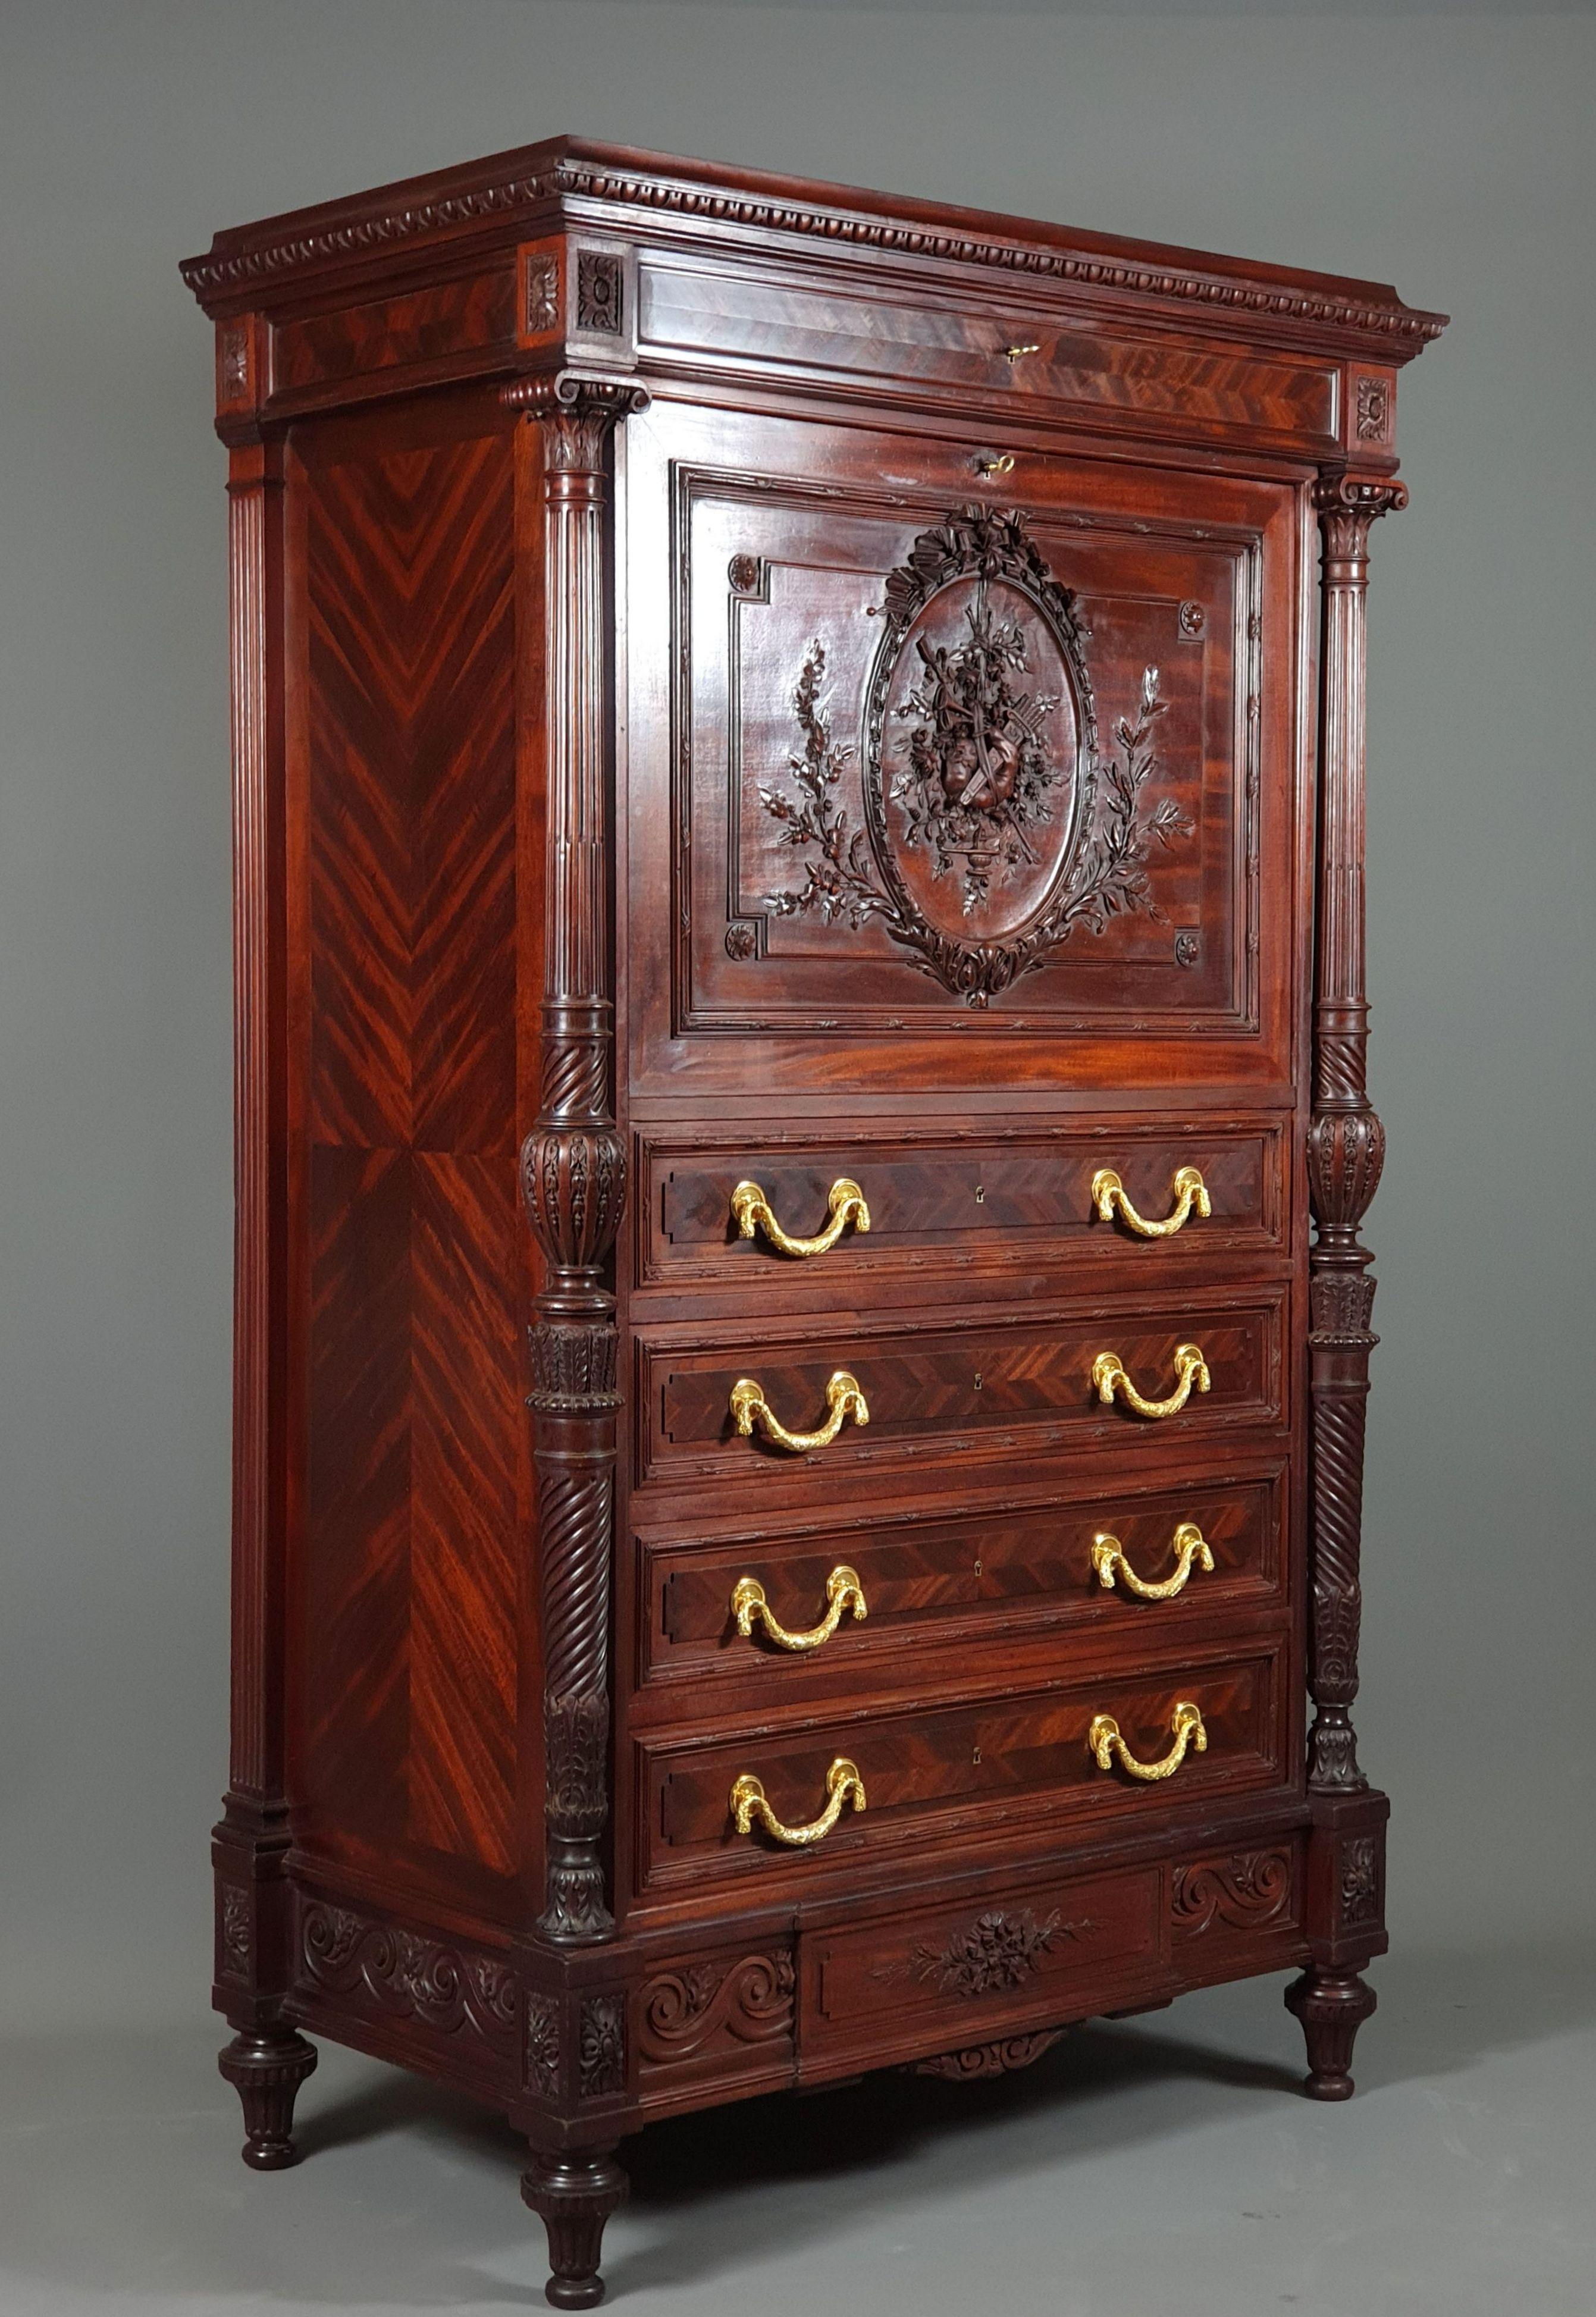 Gustave-Frédéric Quignon

Superb Louis XVI-Stil Möbelstück in sehr fein geschnitzt massivem Mahagoni bilden einen Sekretär / Dokumentenhalter Schrank.
Es lassen sich 6 Schubladen öffnen, darunter eine geheime am Boden, und eine zentrale Klappe, die